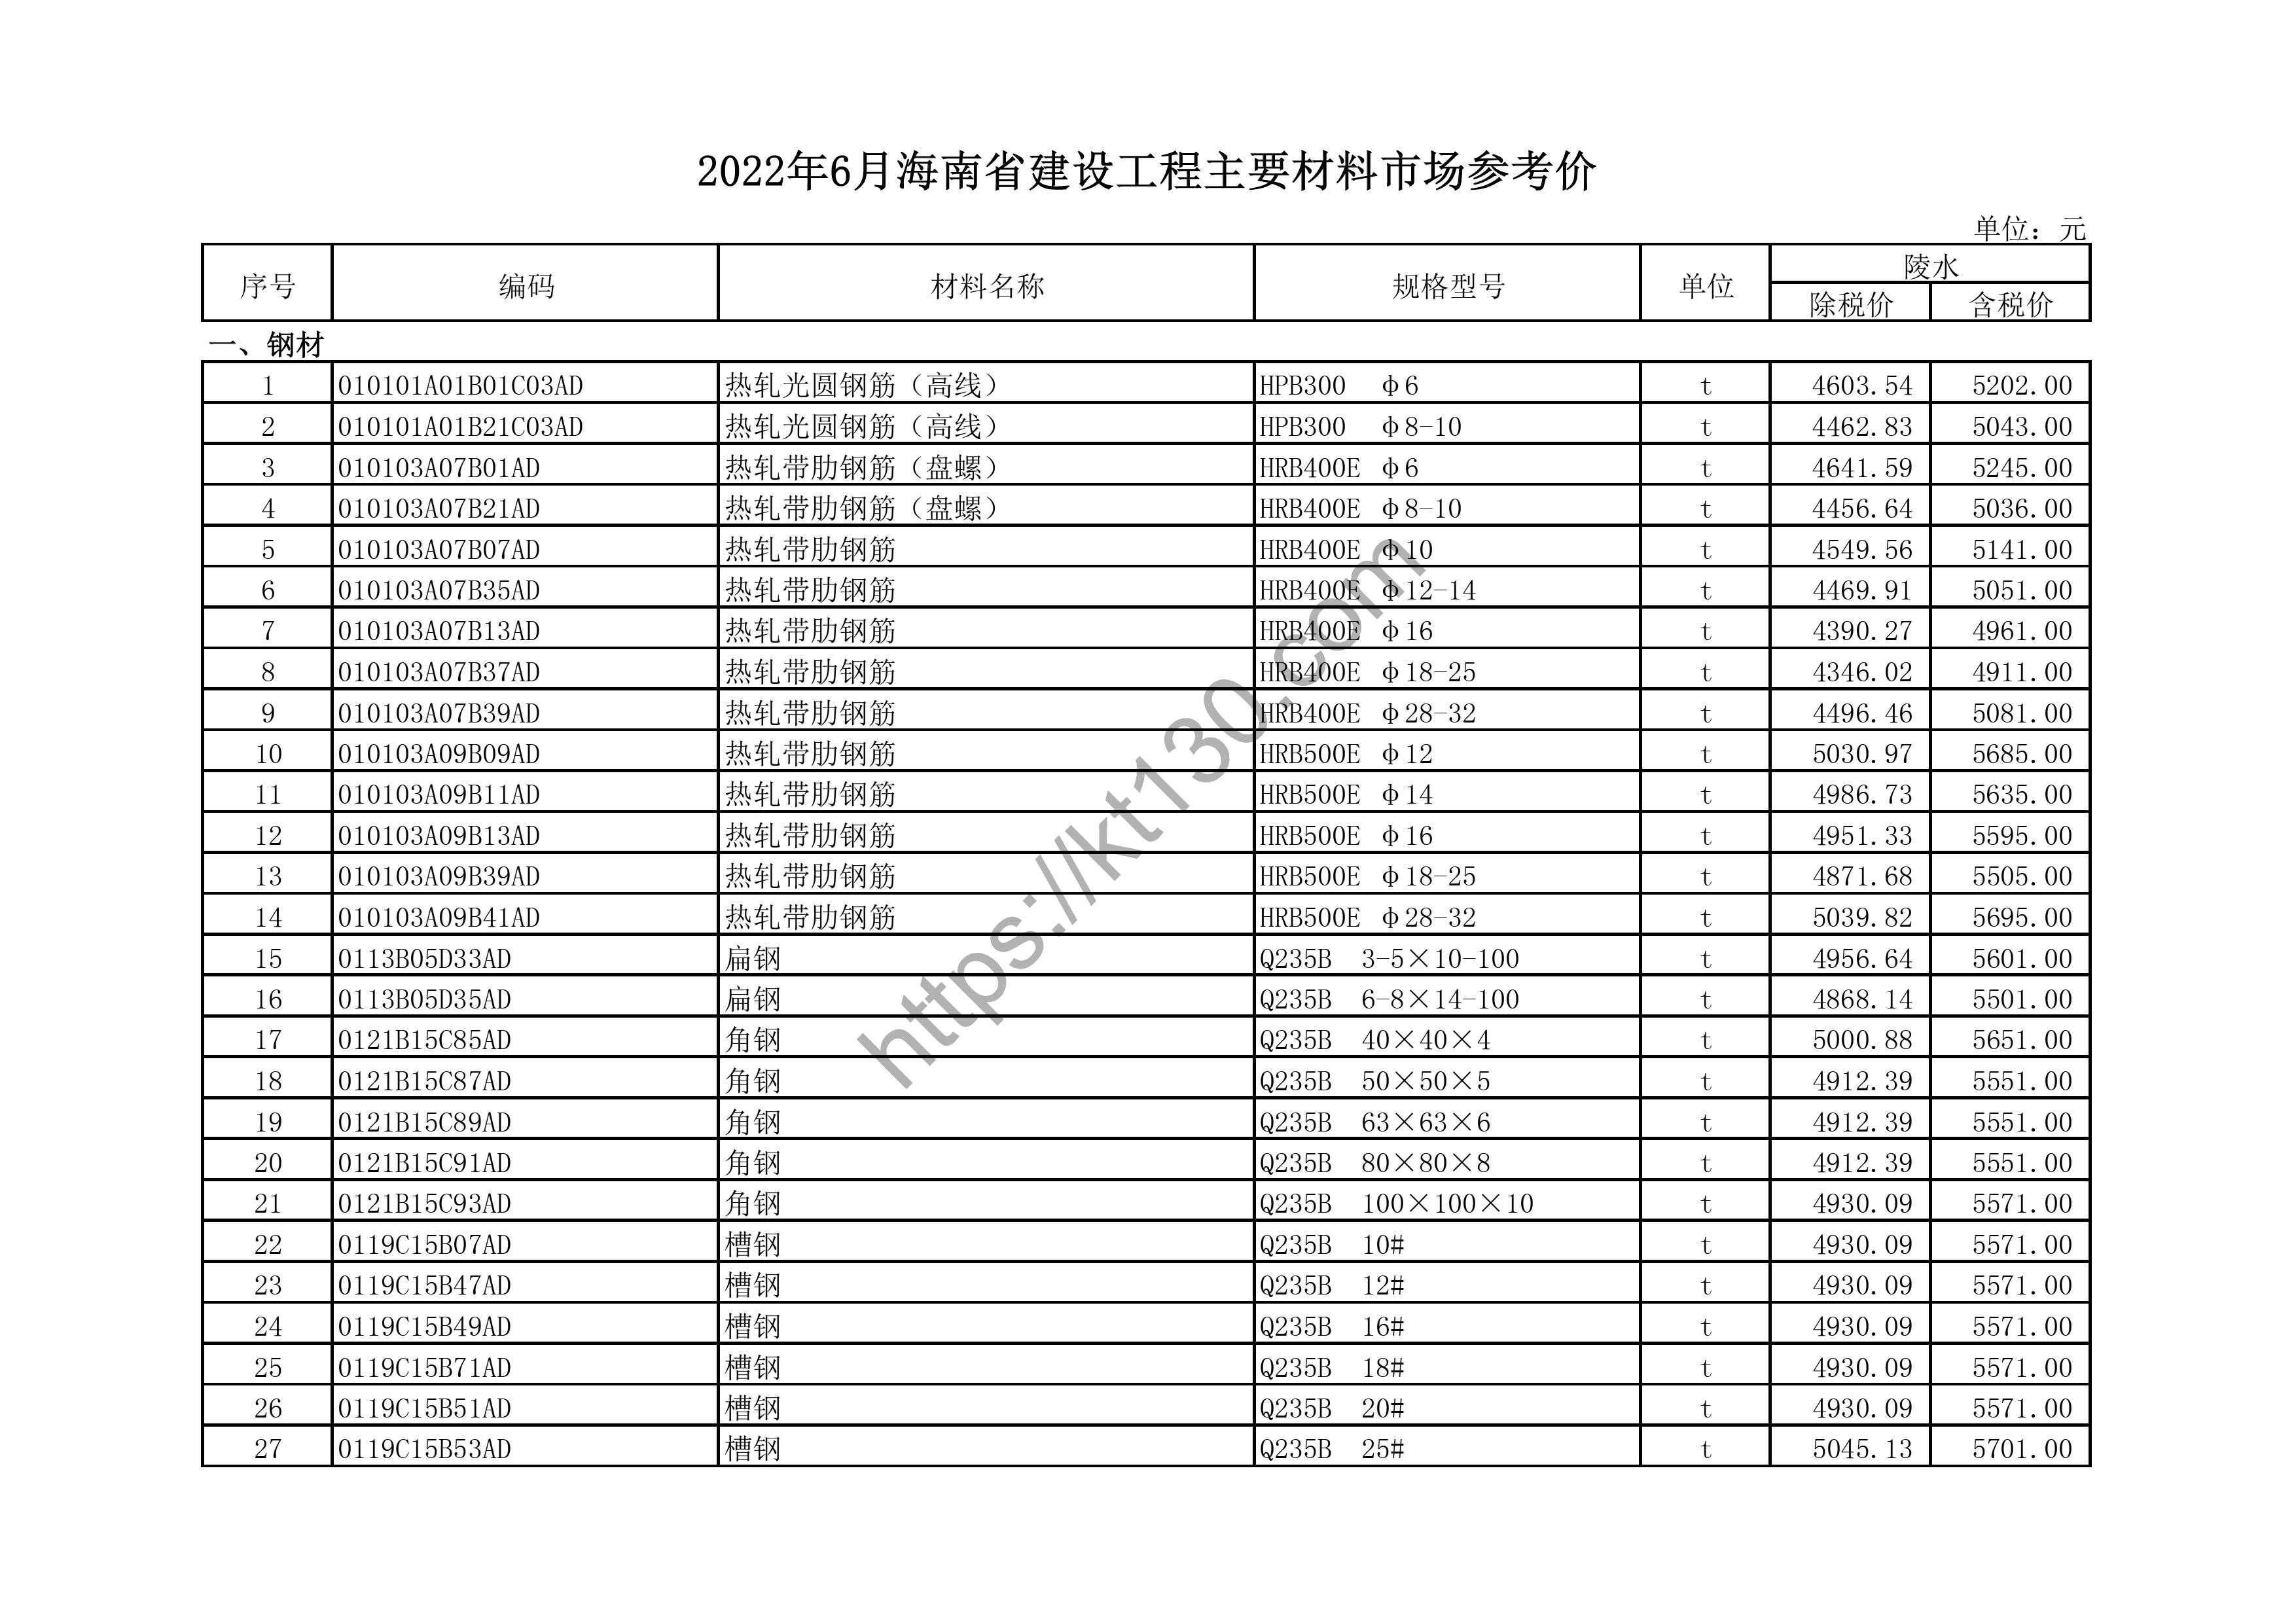 海南省2022年6月建筑材料价_双面钢化玻璃_44498